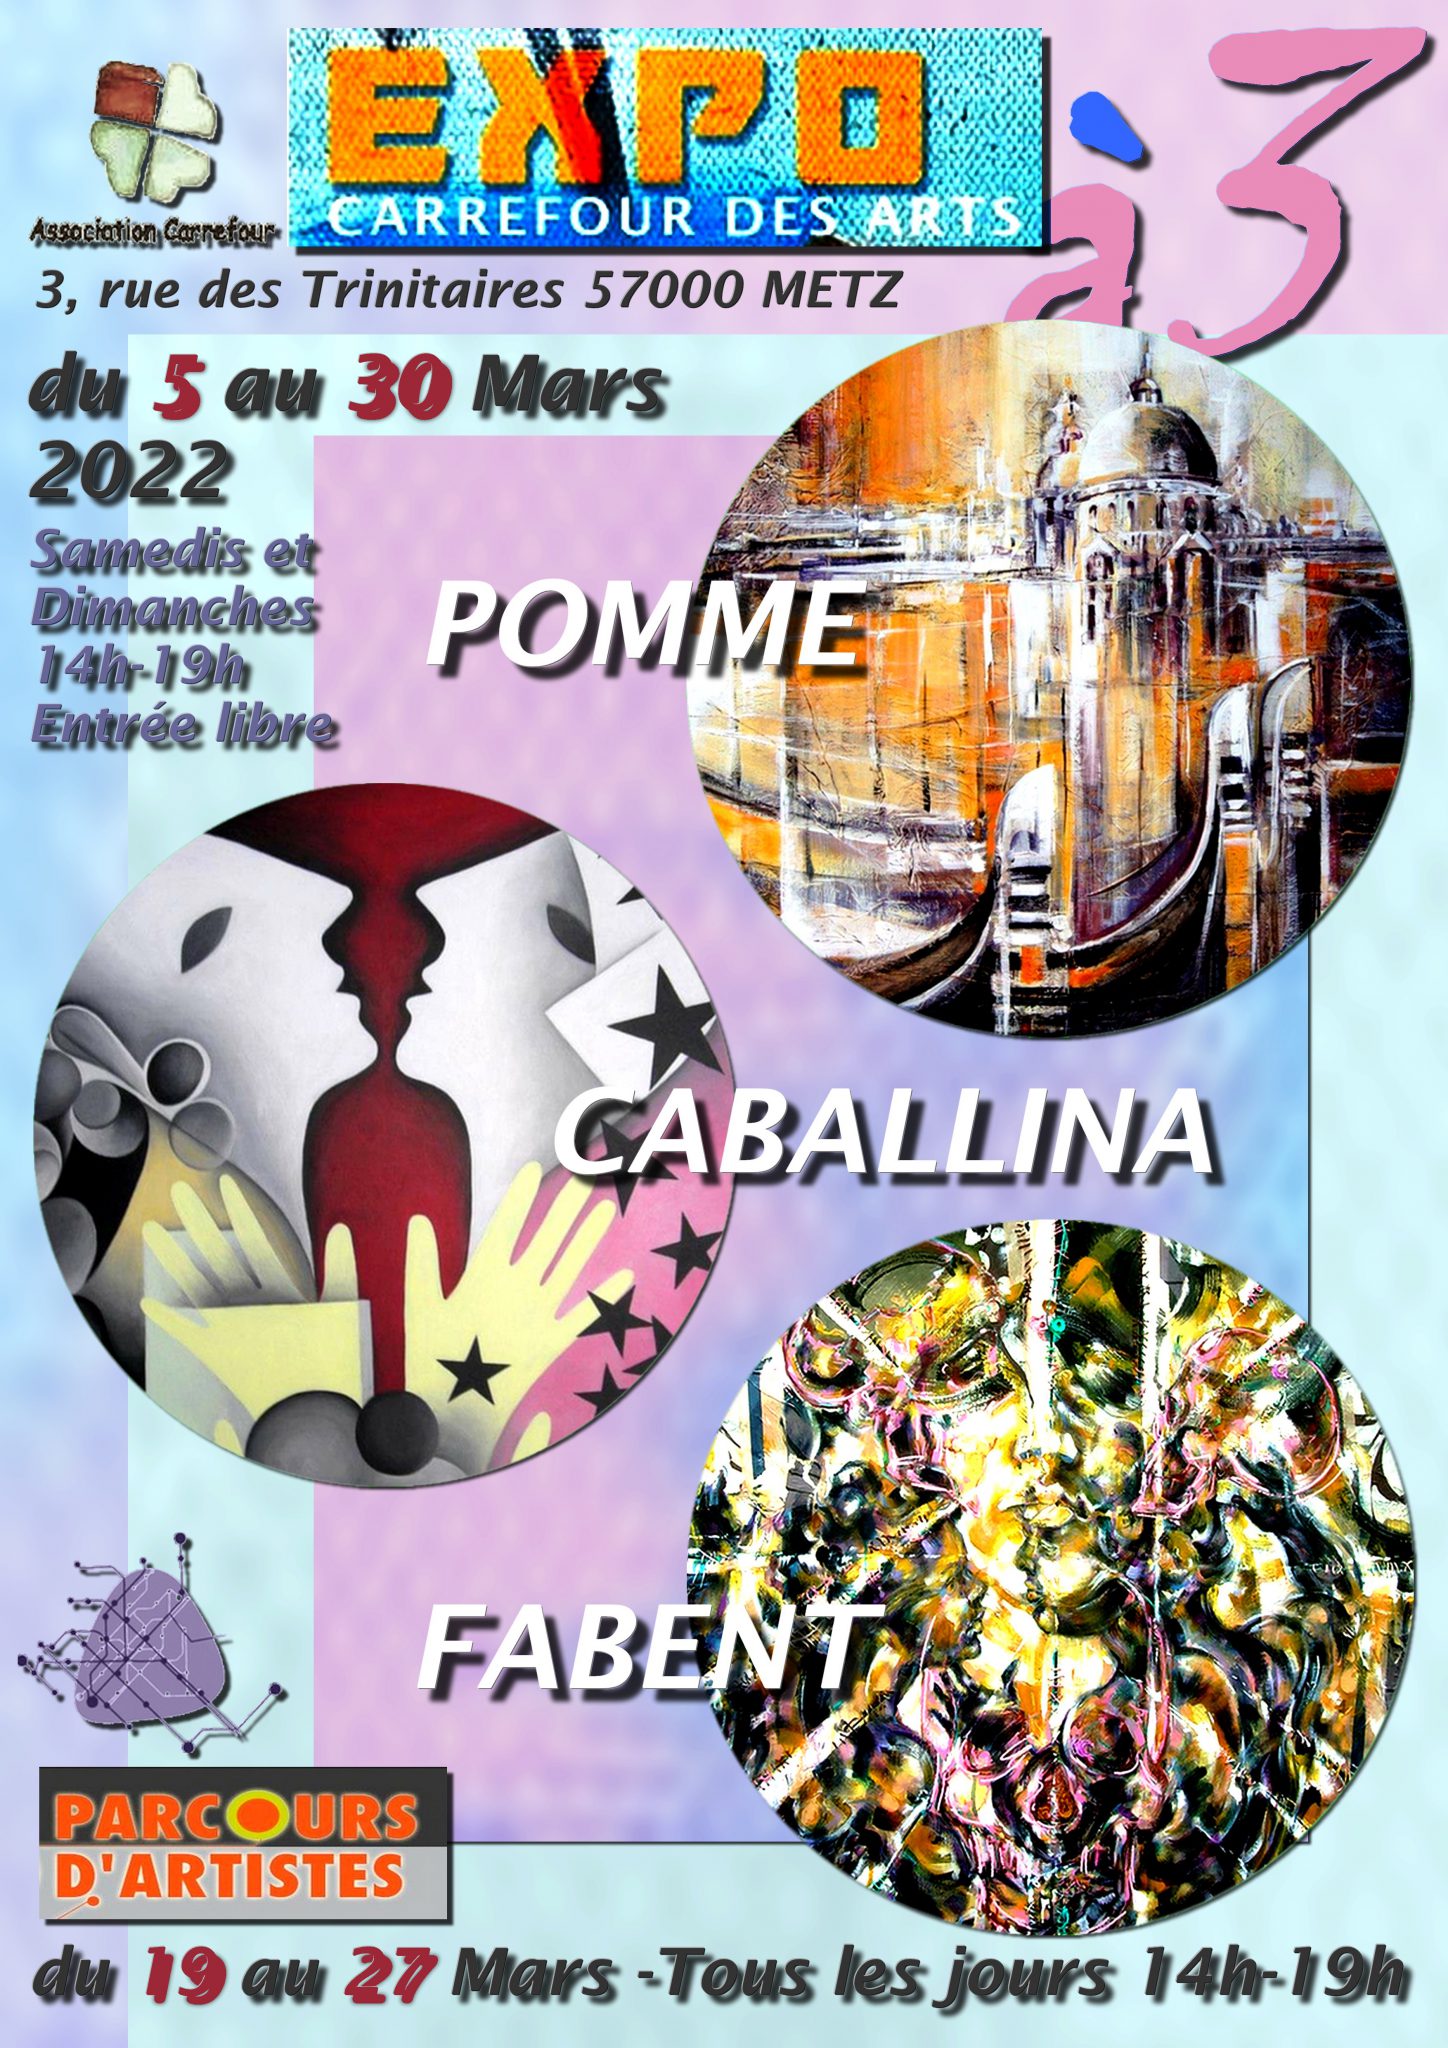 POMME-CABANILLA-FABENT à CARREFOUR DES ARTS, METZ